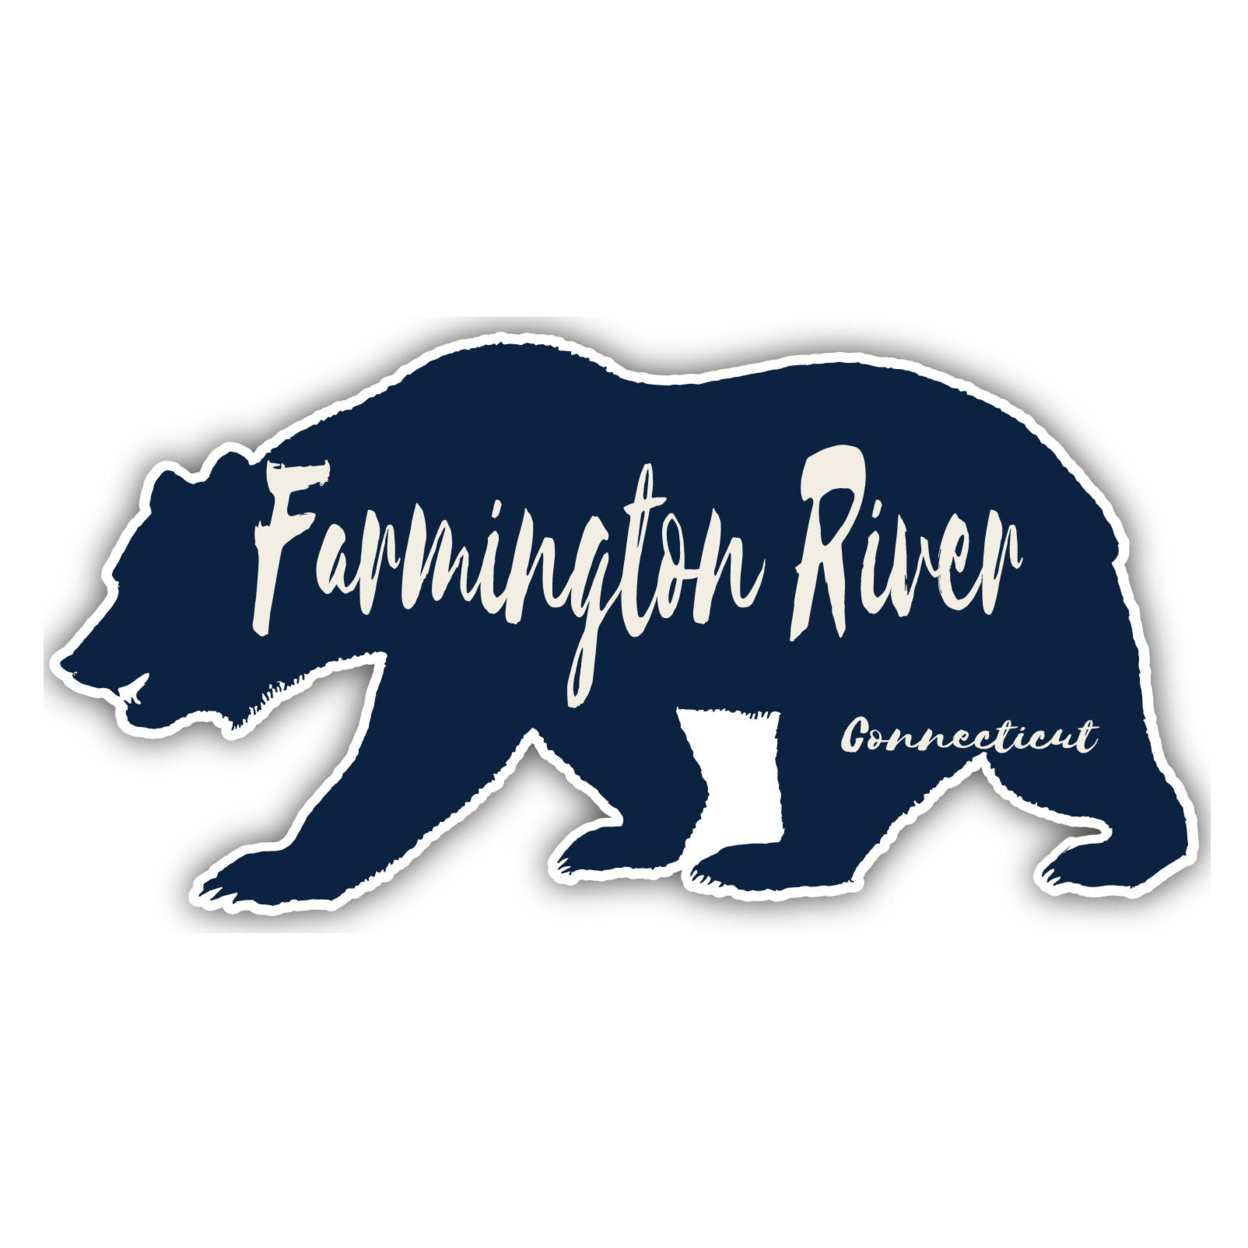 Farmington River Connecticut Souvenir Decorative Stickers (Choose Theme And Size) - Single Unit, 10-Inch, Bear